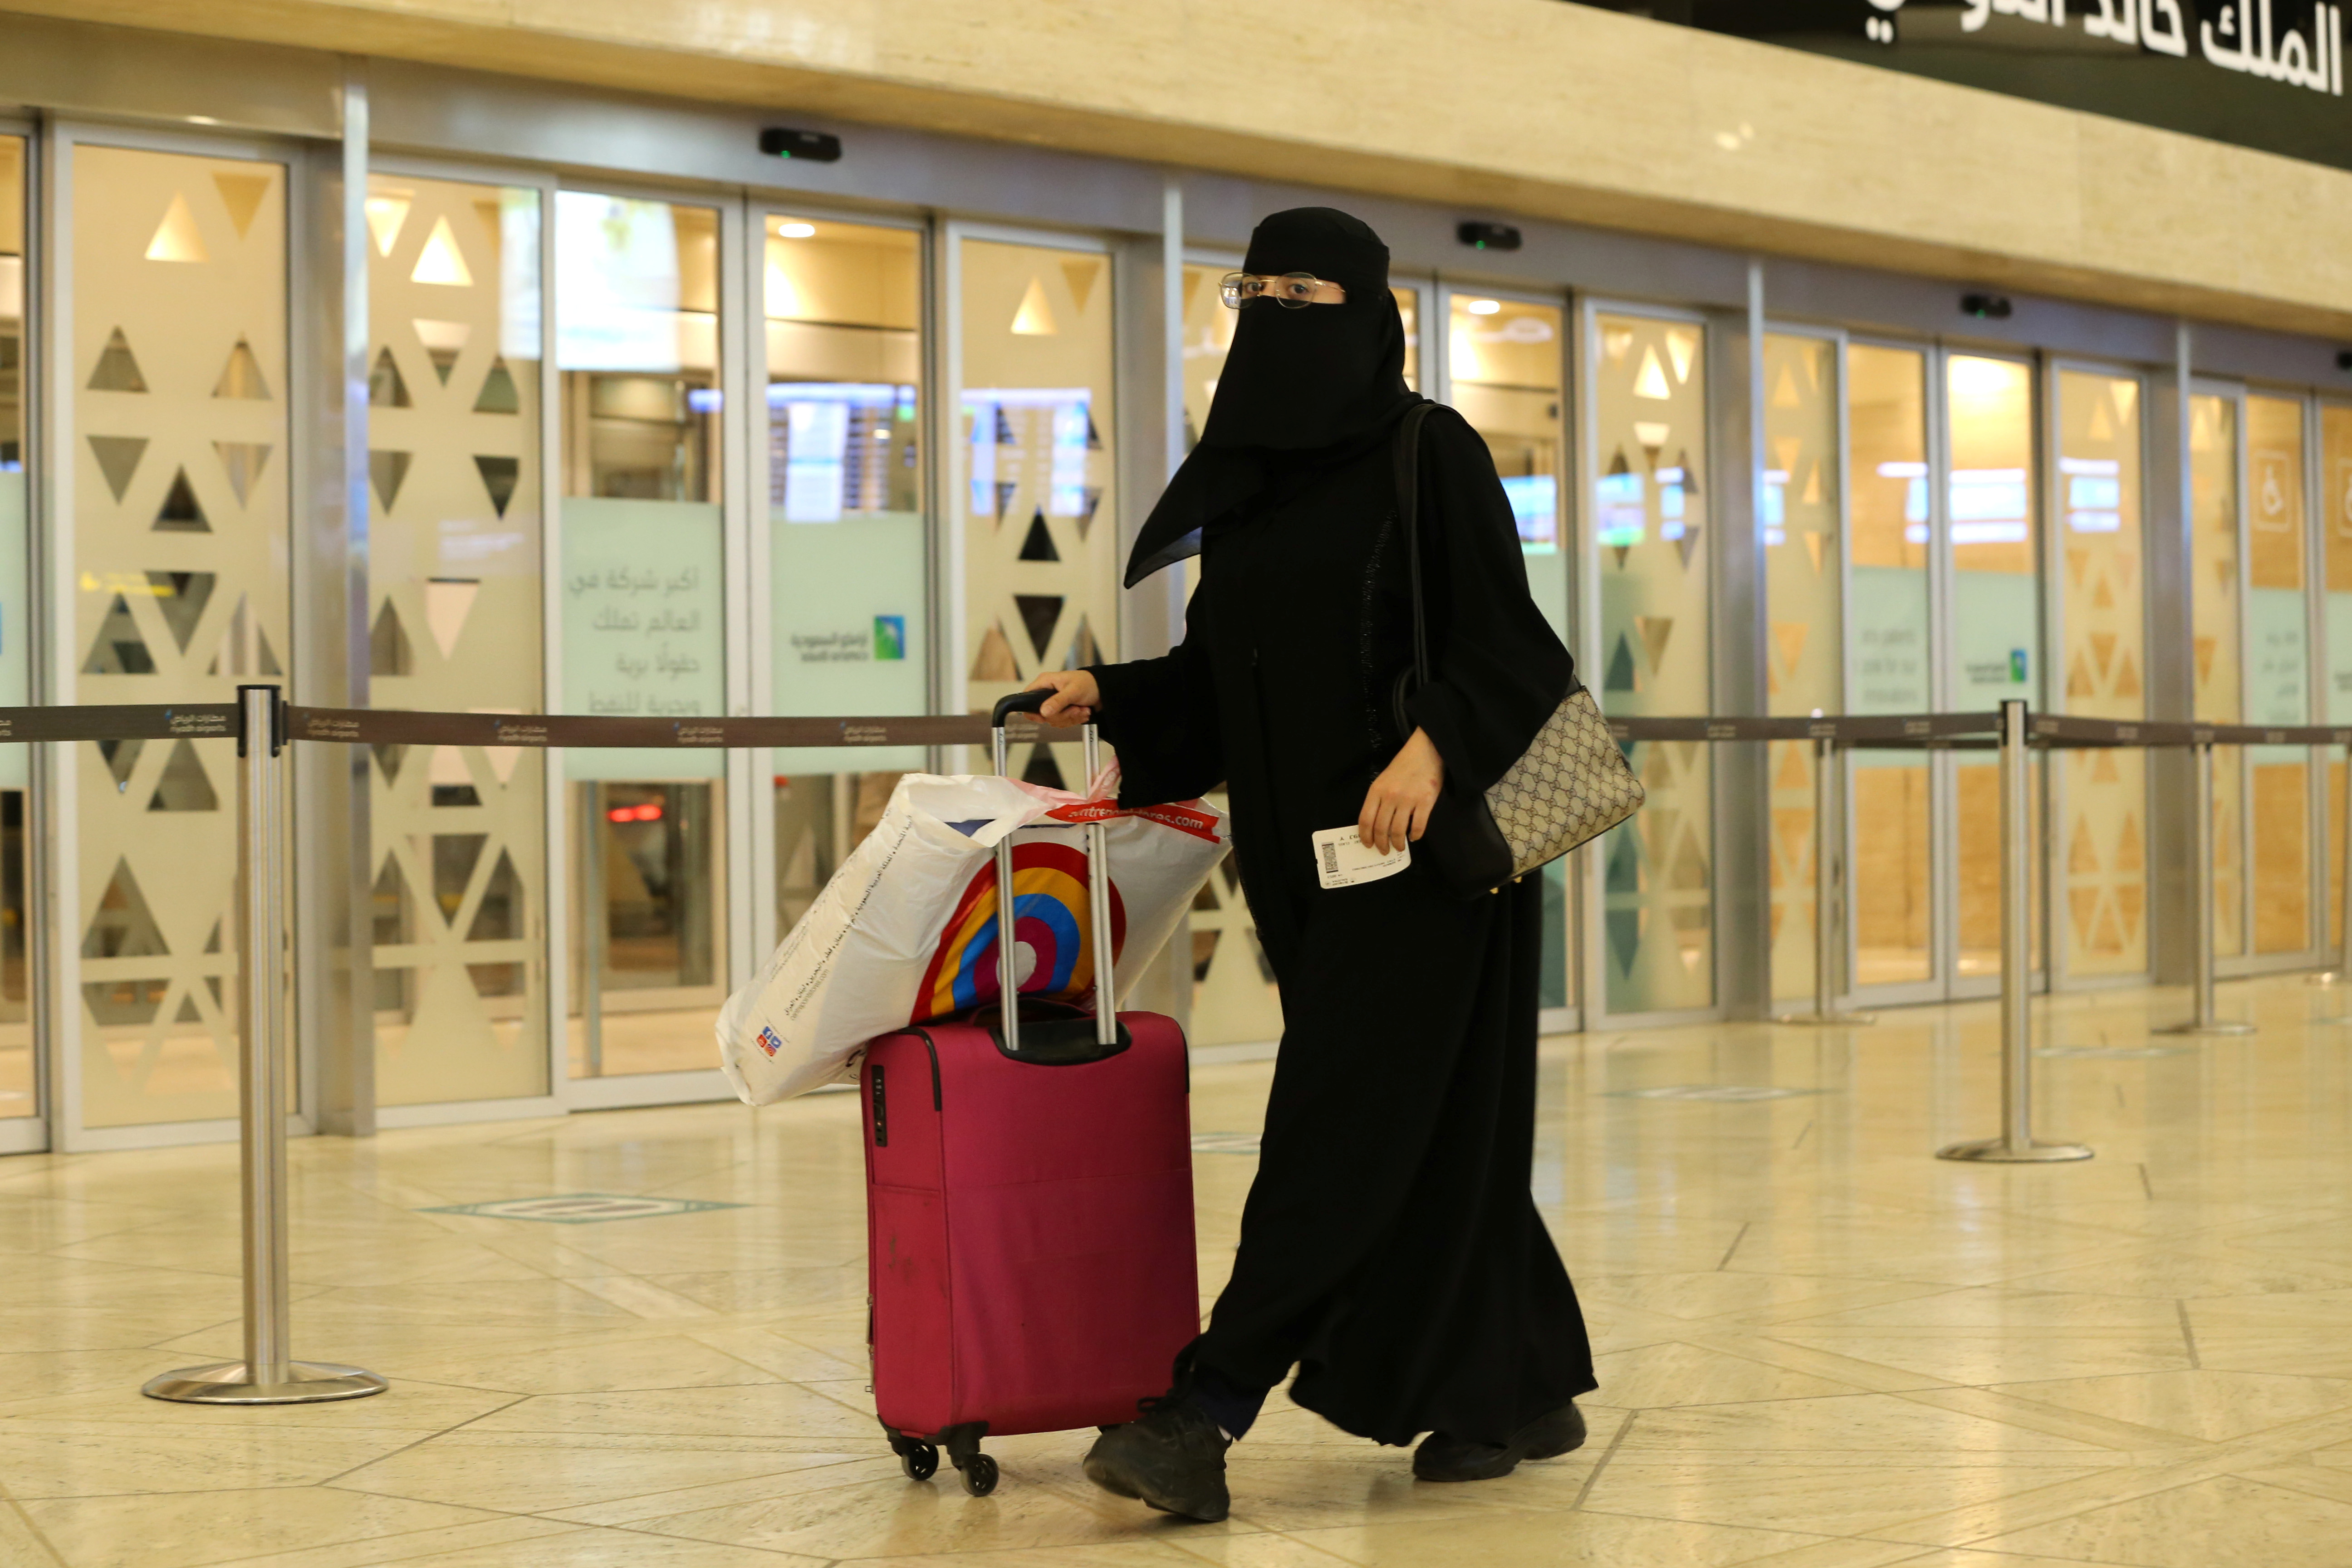 Se ve a una mujer saudí caminando con su equipaje cuando llega al Aeropuerto Internacional Rey Khalid, luego de que las autoridades sauditas levantaran la prohibición de viajar a sus ciudadanos después de catorce meses debido a las restricciones de la enfermedad por coronavirus (COVID-19), en Riad, Arabia Saudita.
REUTERS/Ahmed Yosri